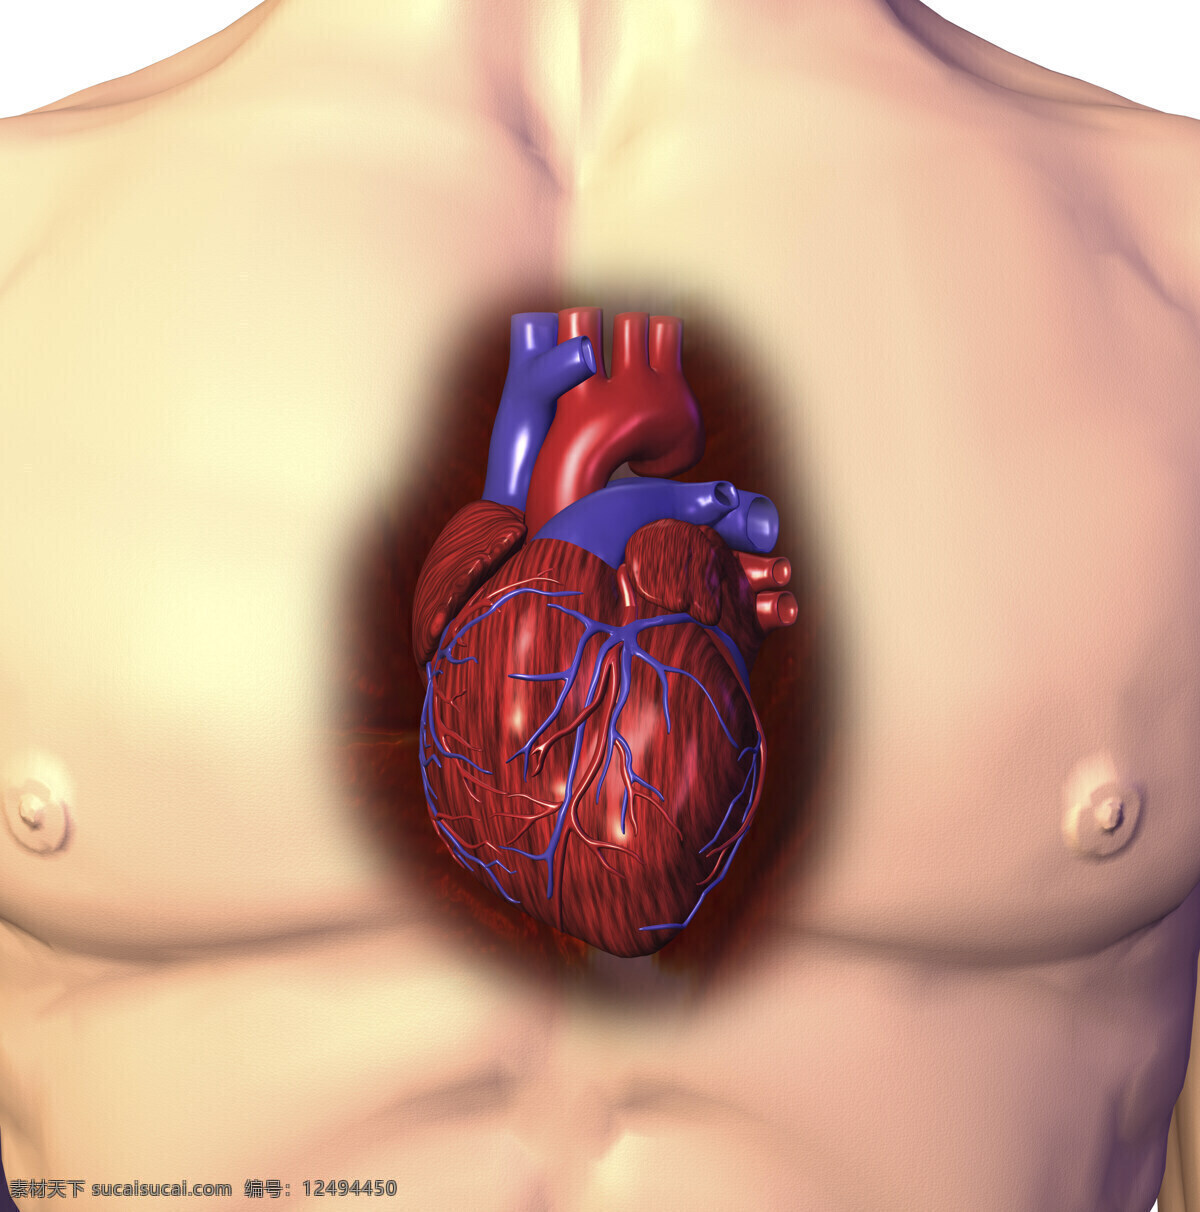 心脏 器官 人体器官 心 3d器官 人体研究 医学器官 人体解剖 医学器官图鉴 医疗护理 现代科技